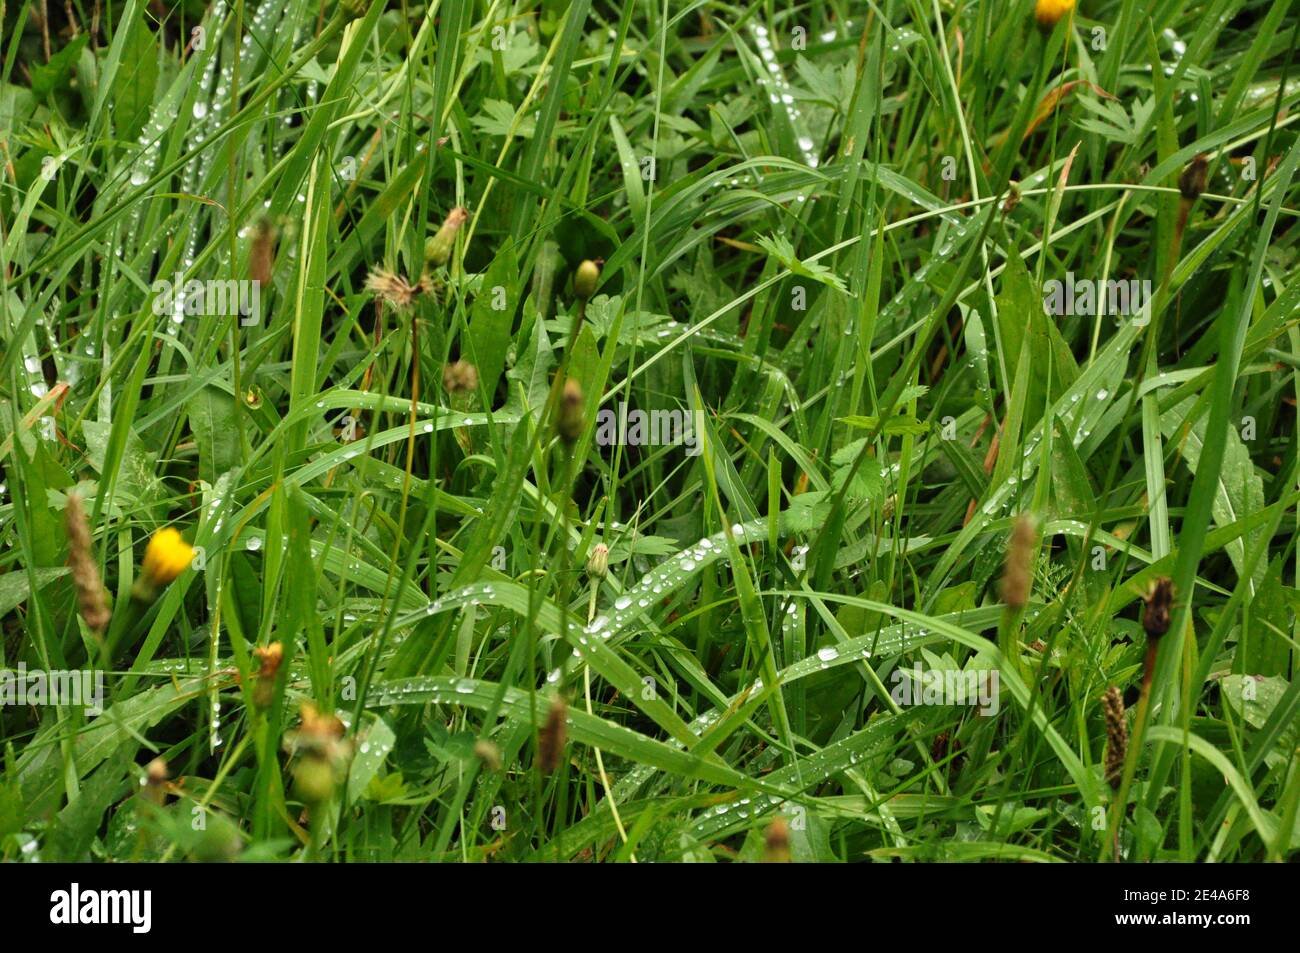 Chiocciole di foglie d'erba ricoperte di gocce d'acqua. Foto Stock